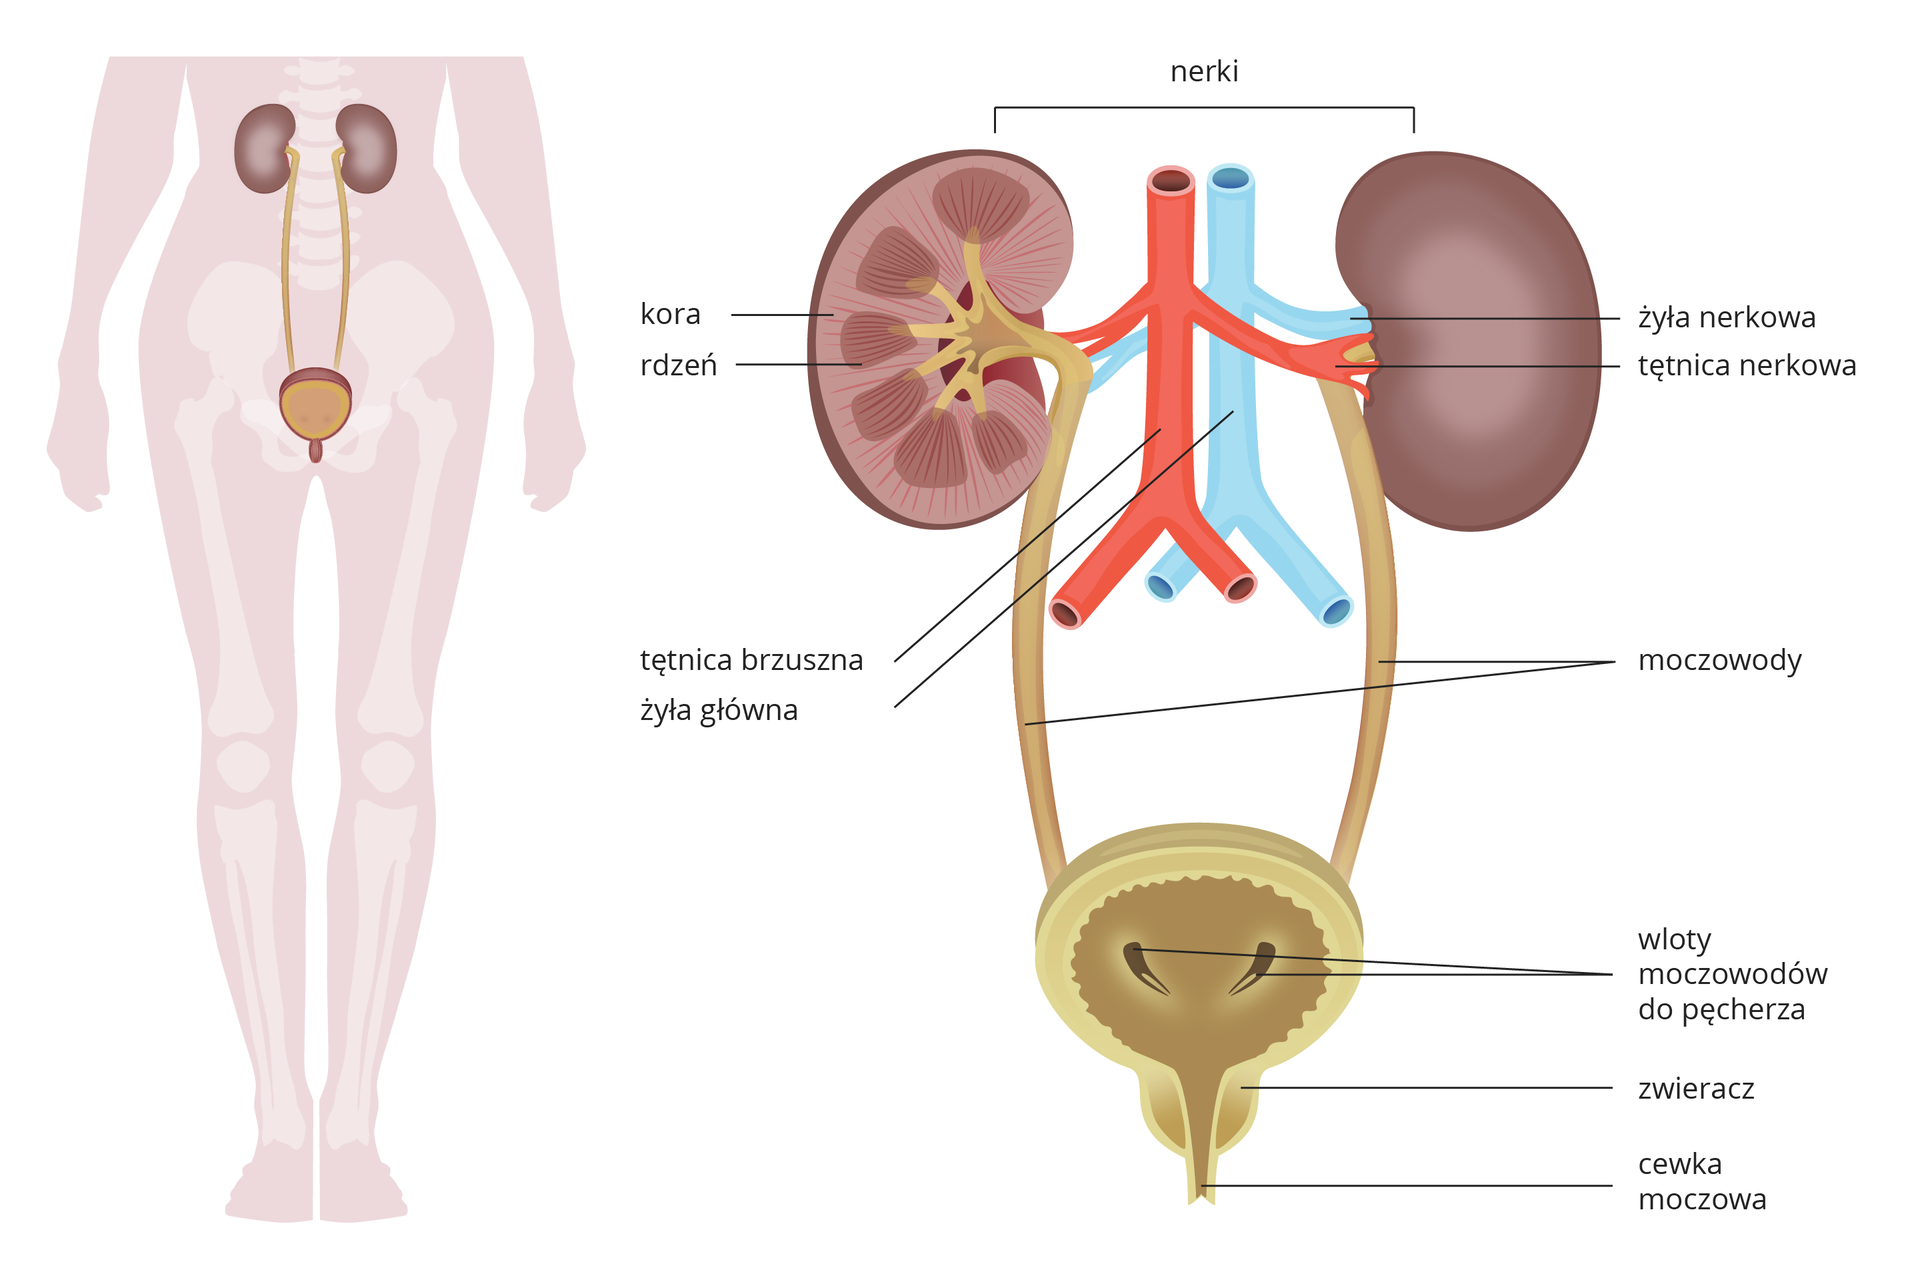 Ilustracja z lewej na sylwetce człowieka przedstawia umiejscowienie narządów układu moczowego. Z prawej przedstawiono budowę narządów. U góry dwie fioletowe nerki, jedna w przekroju. Między nimi niebieska żyła główna i żyła nerkowa oraz czerwona tętnica brzuszna i tętnica nerkowa. Na przekroju nerki podpisano jaśniejszą korę i ciemniejszy, prążkowany rdzeń. Od nerki w dół beżowe rurki –moczowody, wpadające do okrągłego pęcherza moczowego w przekroju pionowym. Wskazano zgrubienie u dołu pęcherza – zwieracz i cewkę moczową.